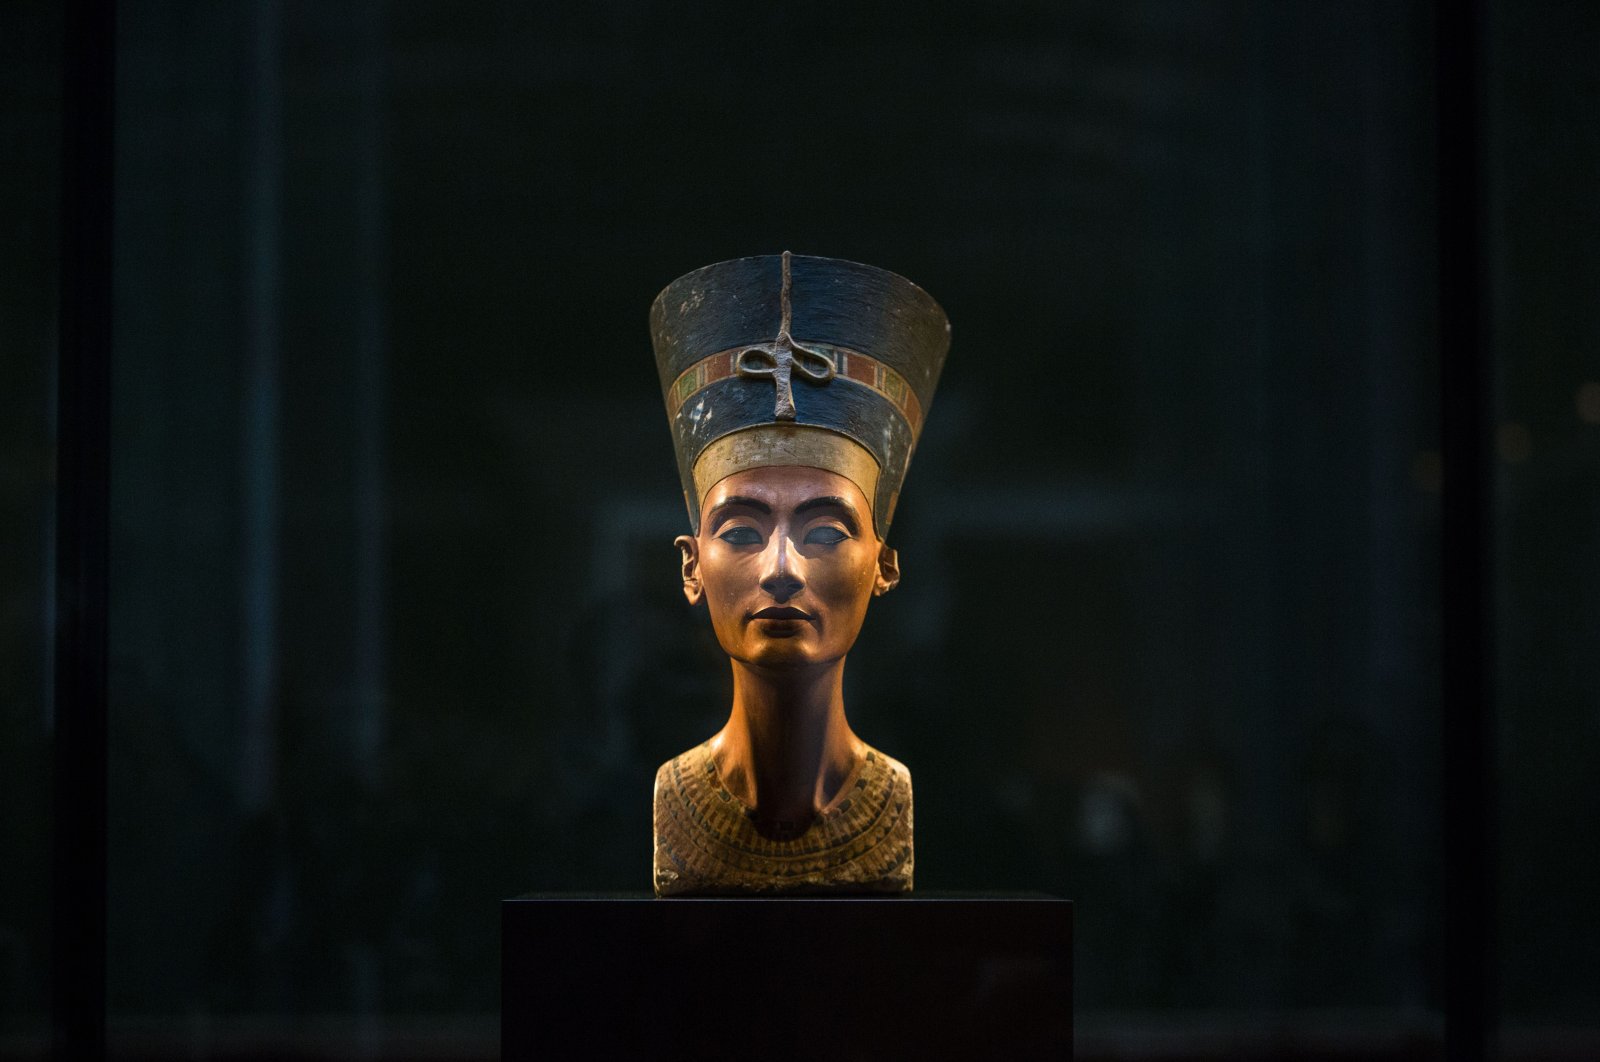 Harta karun perhiasan emas yang tak ternilai dari era Nefertiti ditemukan di Siprus